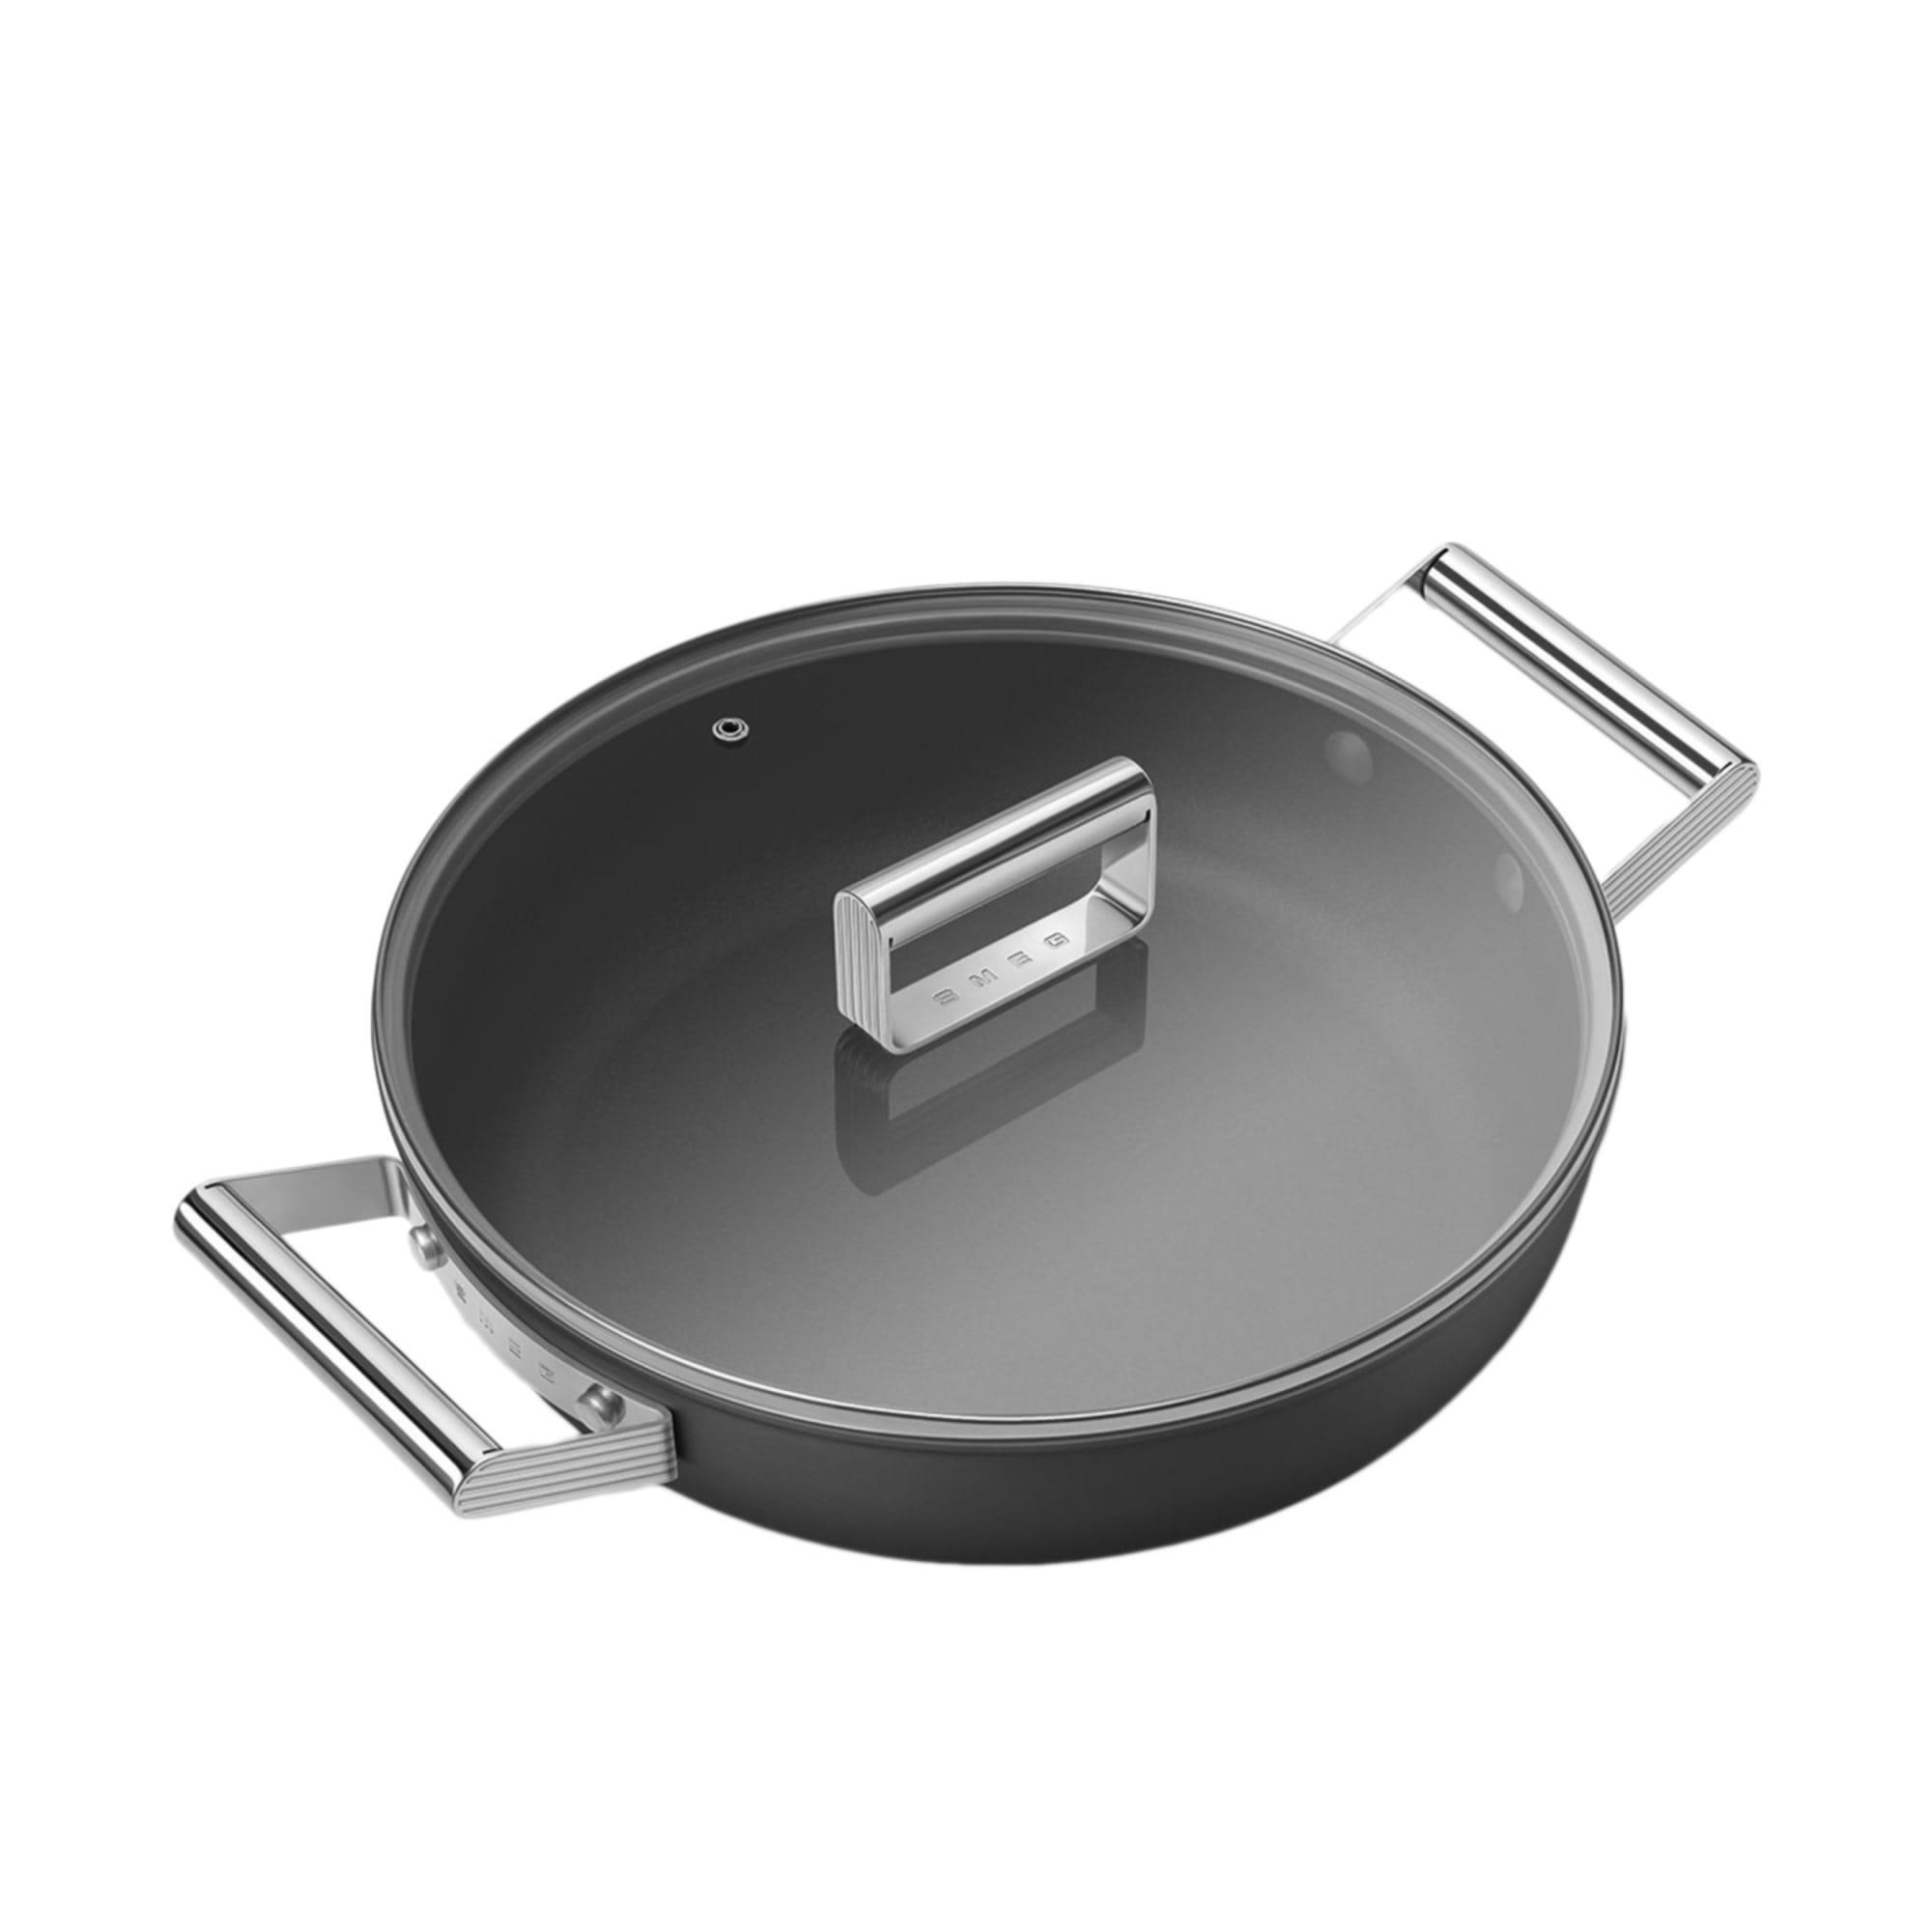 Smeg Non Stick Chef's Pan with Lid 28cm - 3.7L Black Image 7